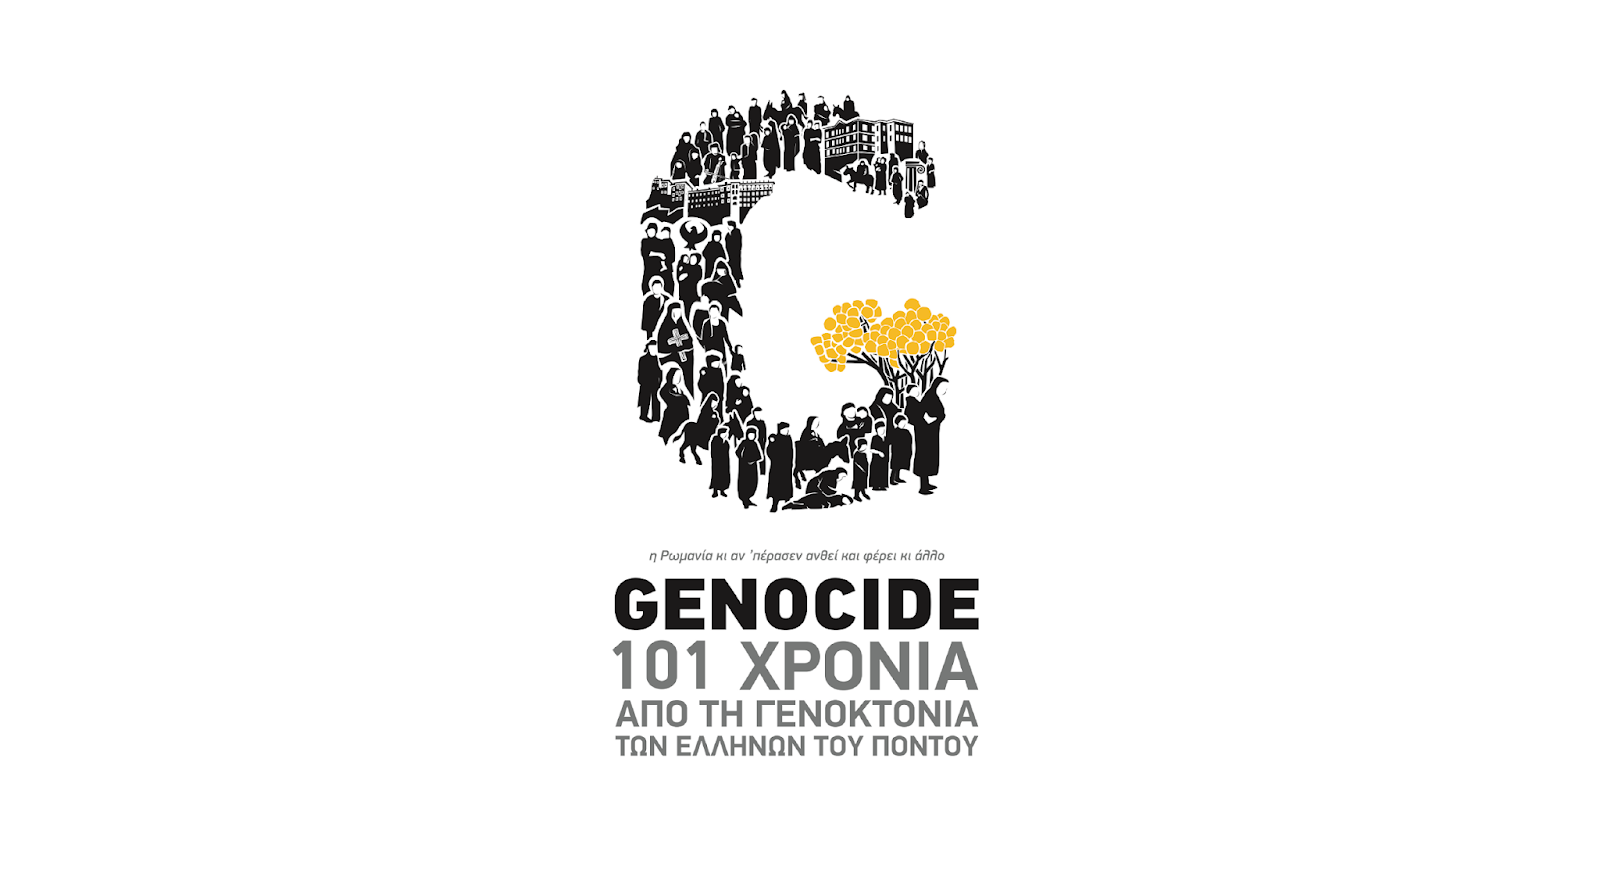  Γενοκτονία Ποντίων | Για ποιον λόγο η Ελλάδα δεν διεκδικεί την αναγνώρισή της